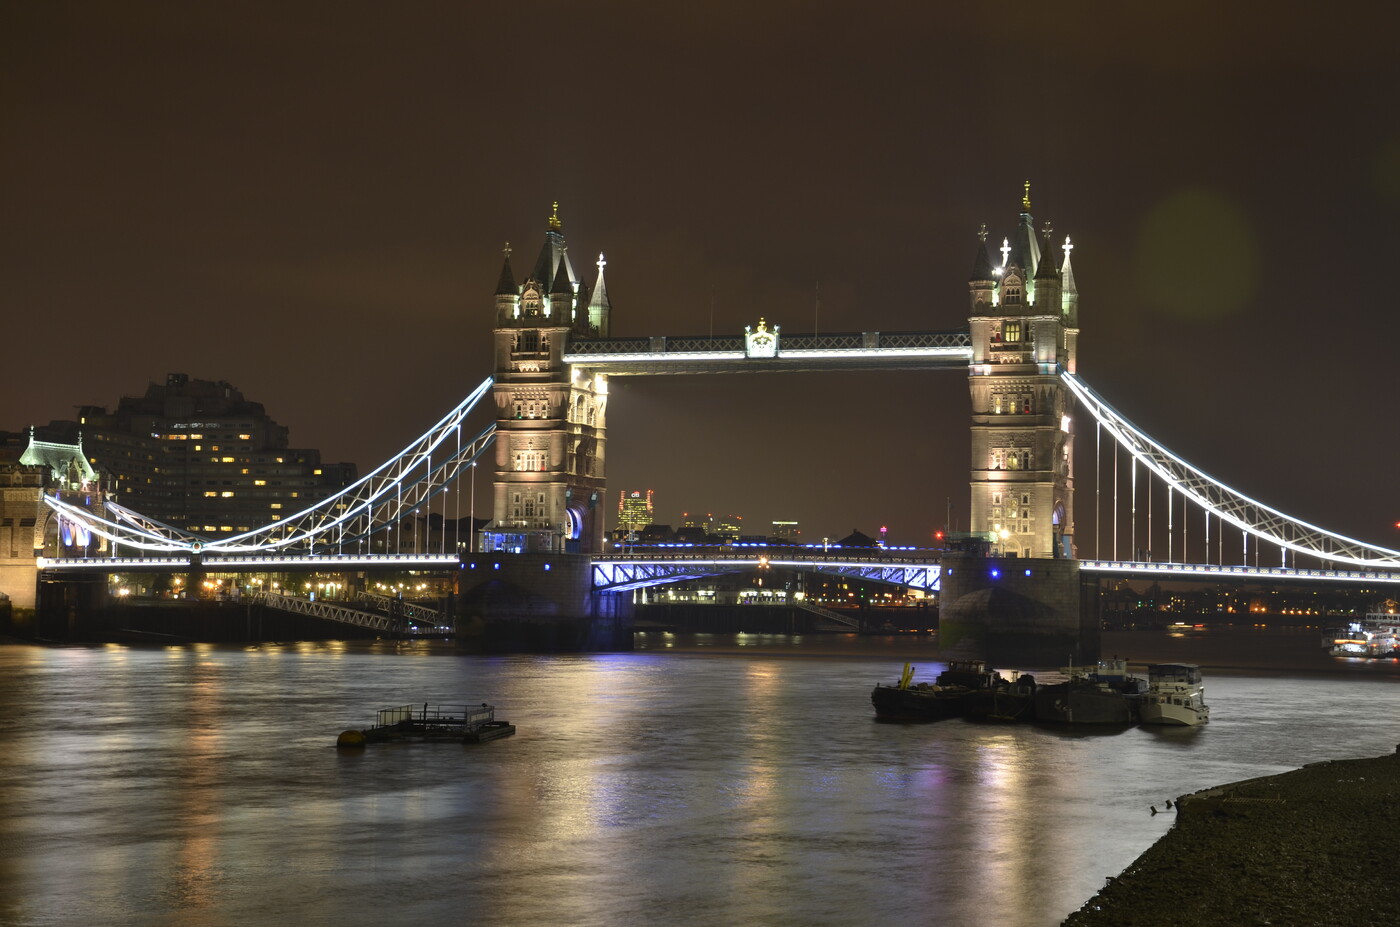 photographer Chris4824 long exposure  photo taken at London Tower Bridge